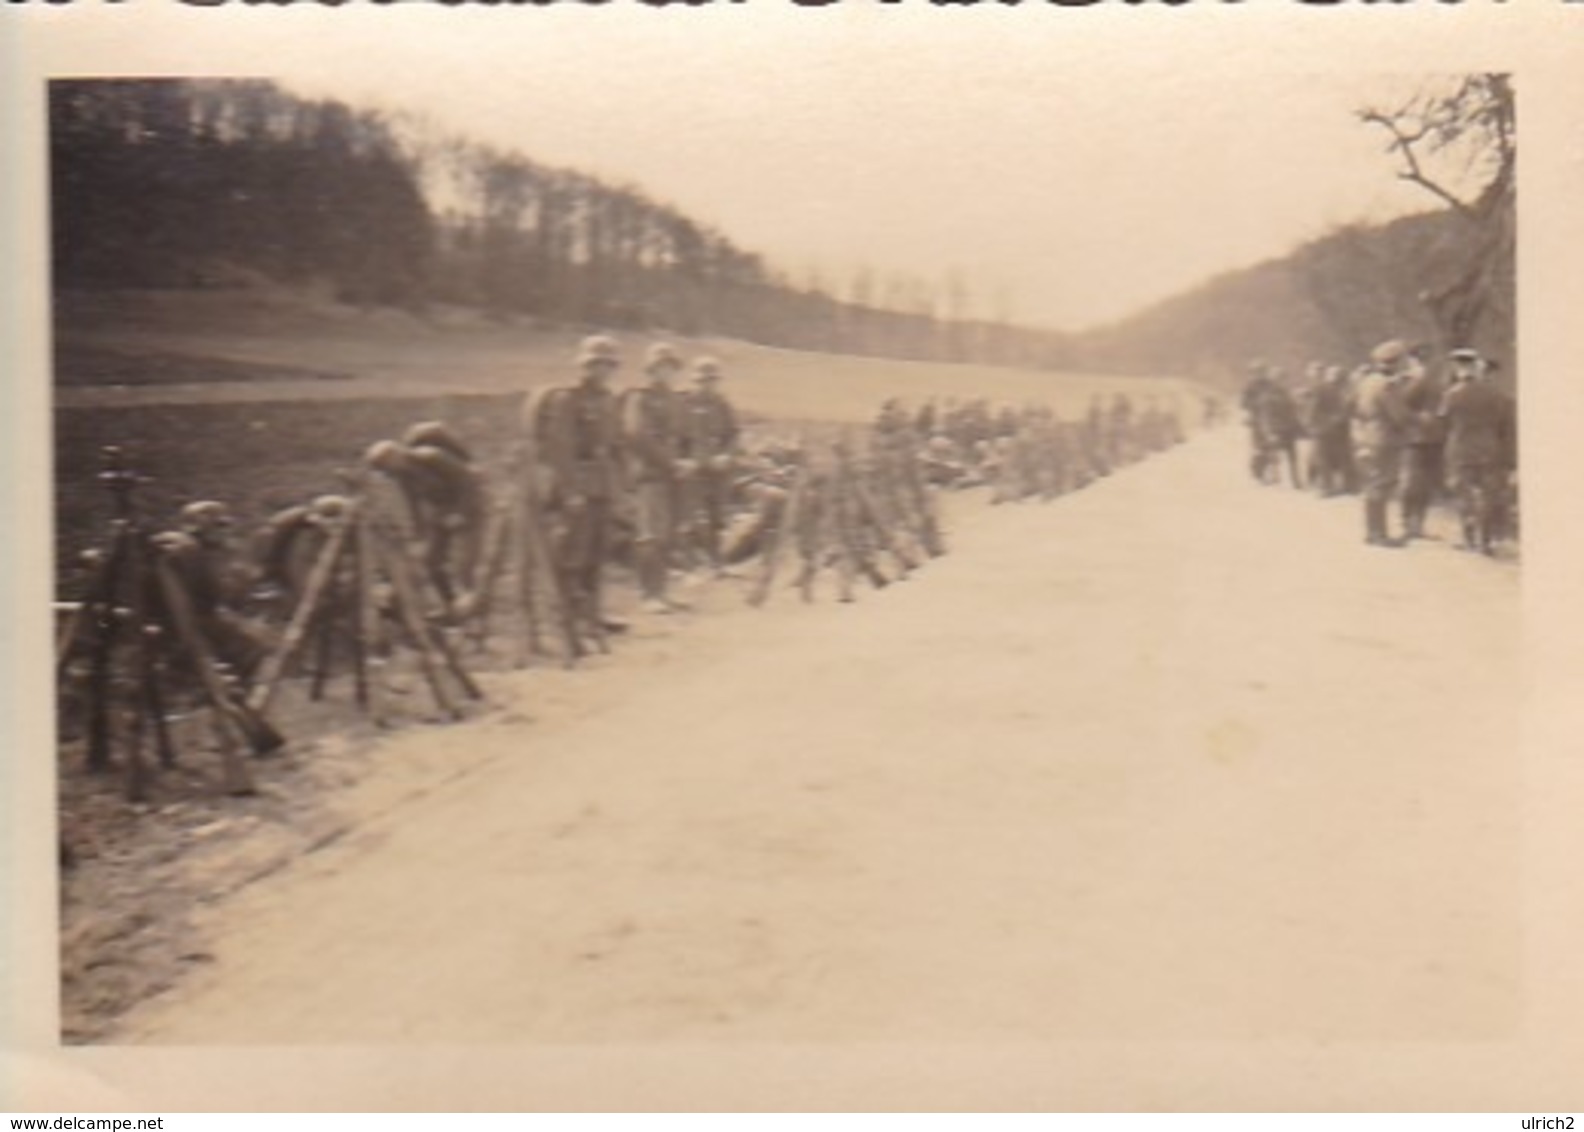 Foto Deutsche Soldaten Bei Marschpause - Gewehrpyramide - Pioniere IR 46 - 2. WK - 8*5,5cm (43441) - Krieg, Militär